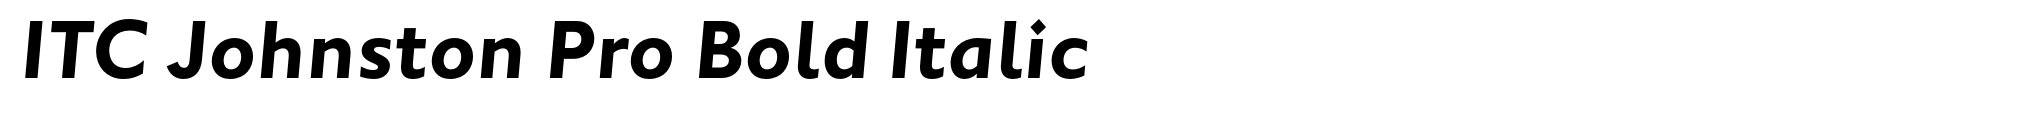 ITC Johnston Pro Bold Italic image